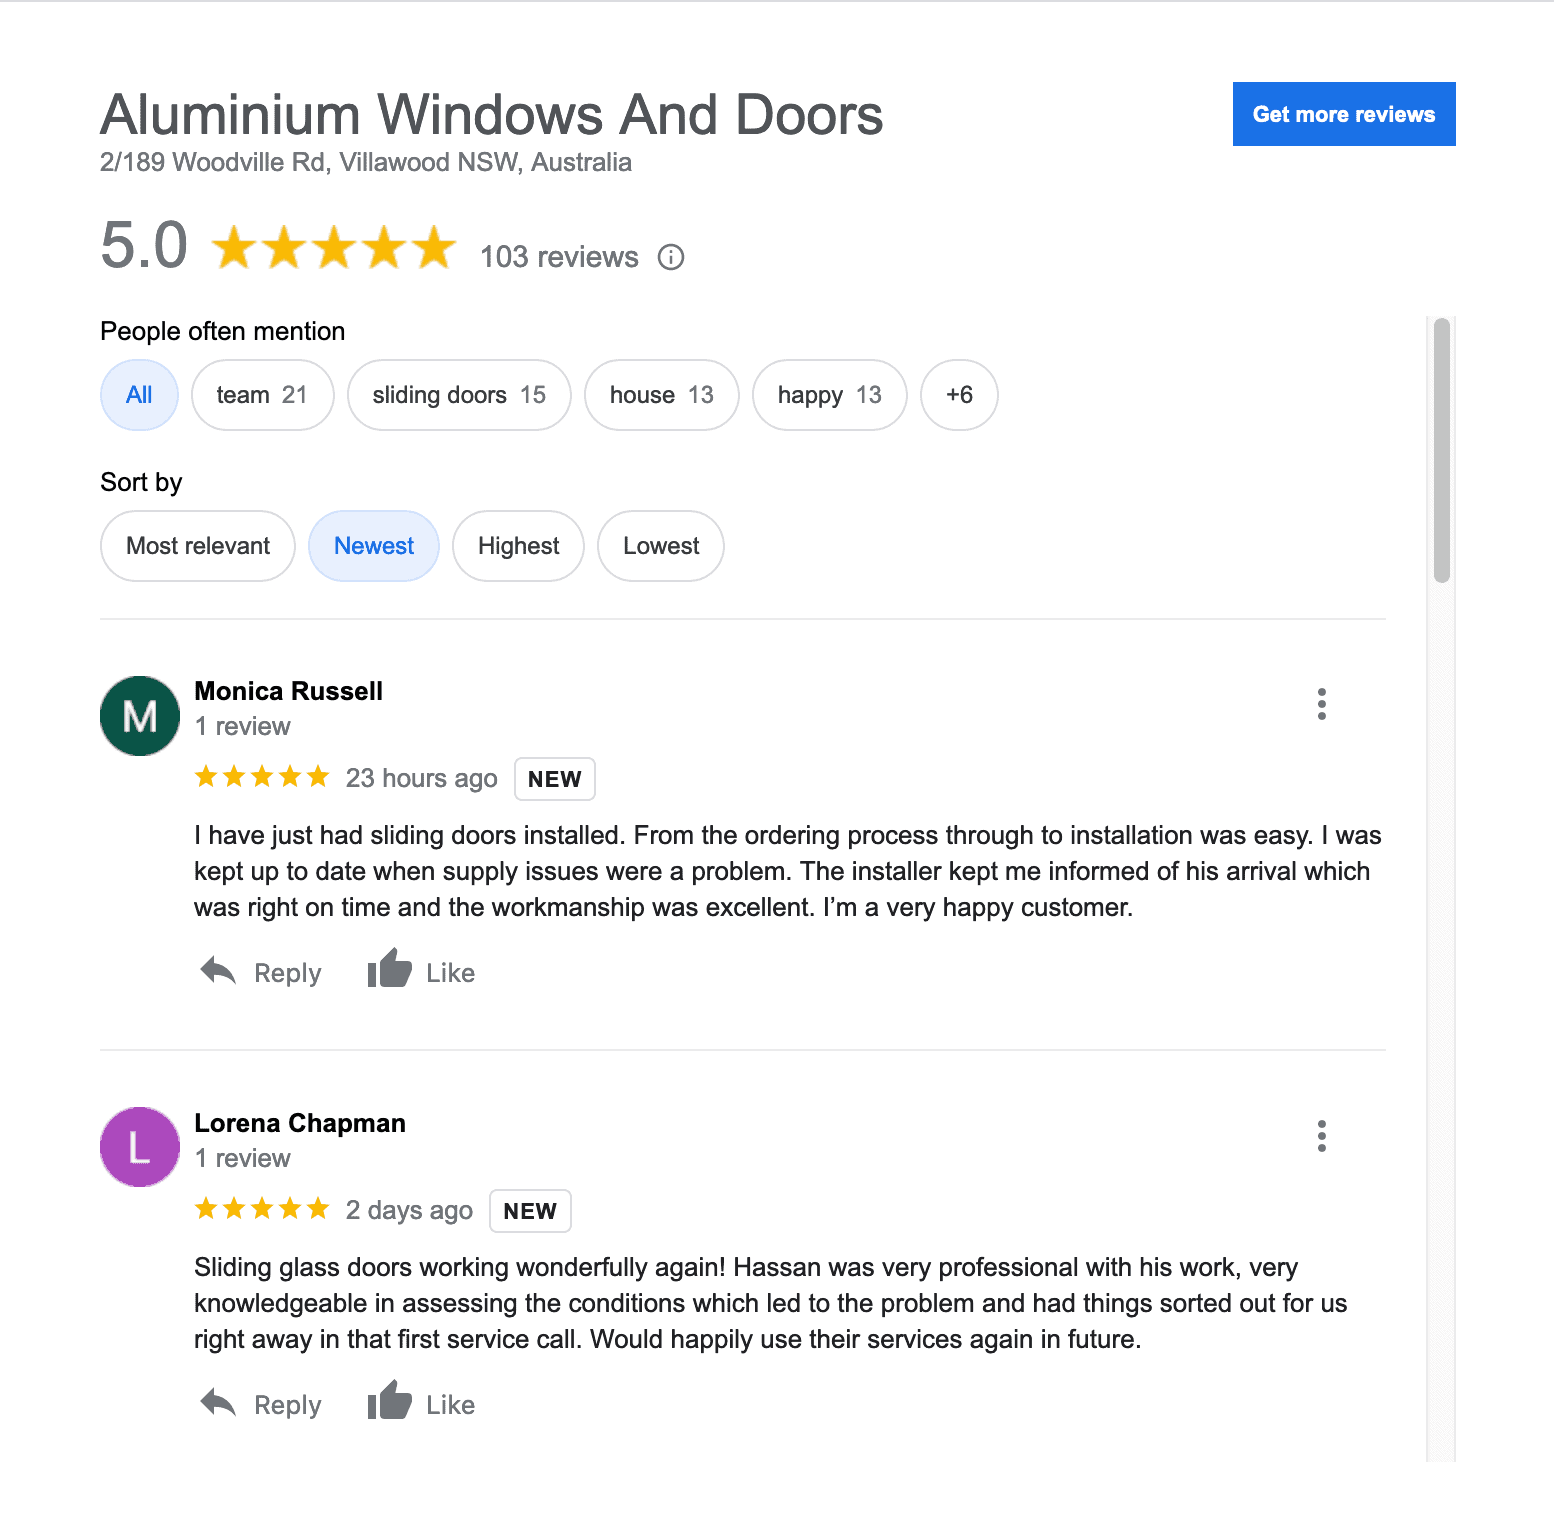 Aluminium-Windows-And-Doors-Google-Reviews